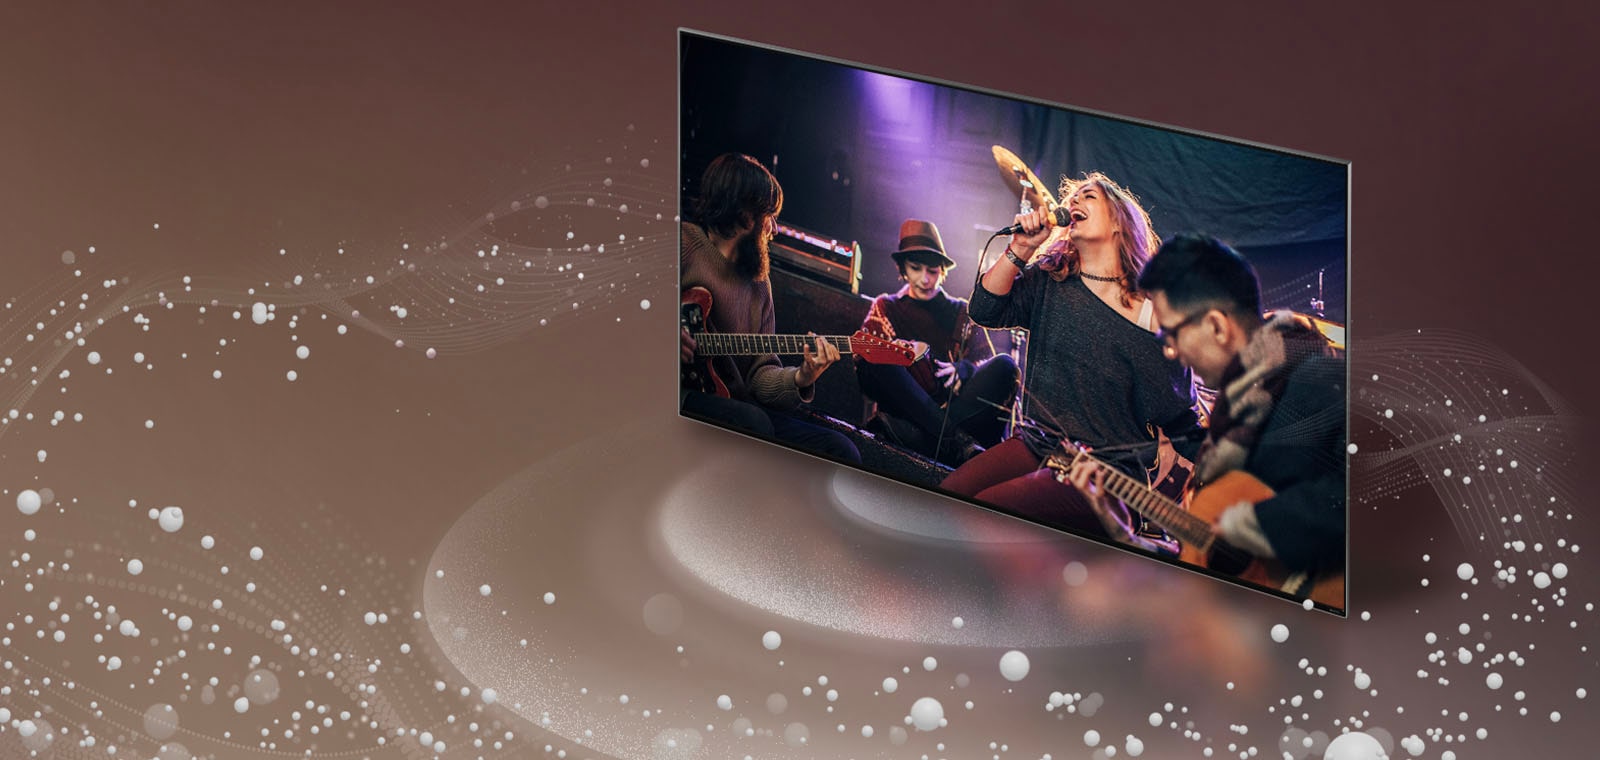 Телевизор LG TV, от экрана которого исходят звуковые пузыри и волны, заполняющие пространство.